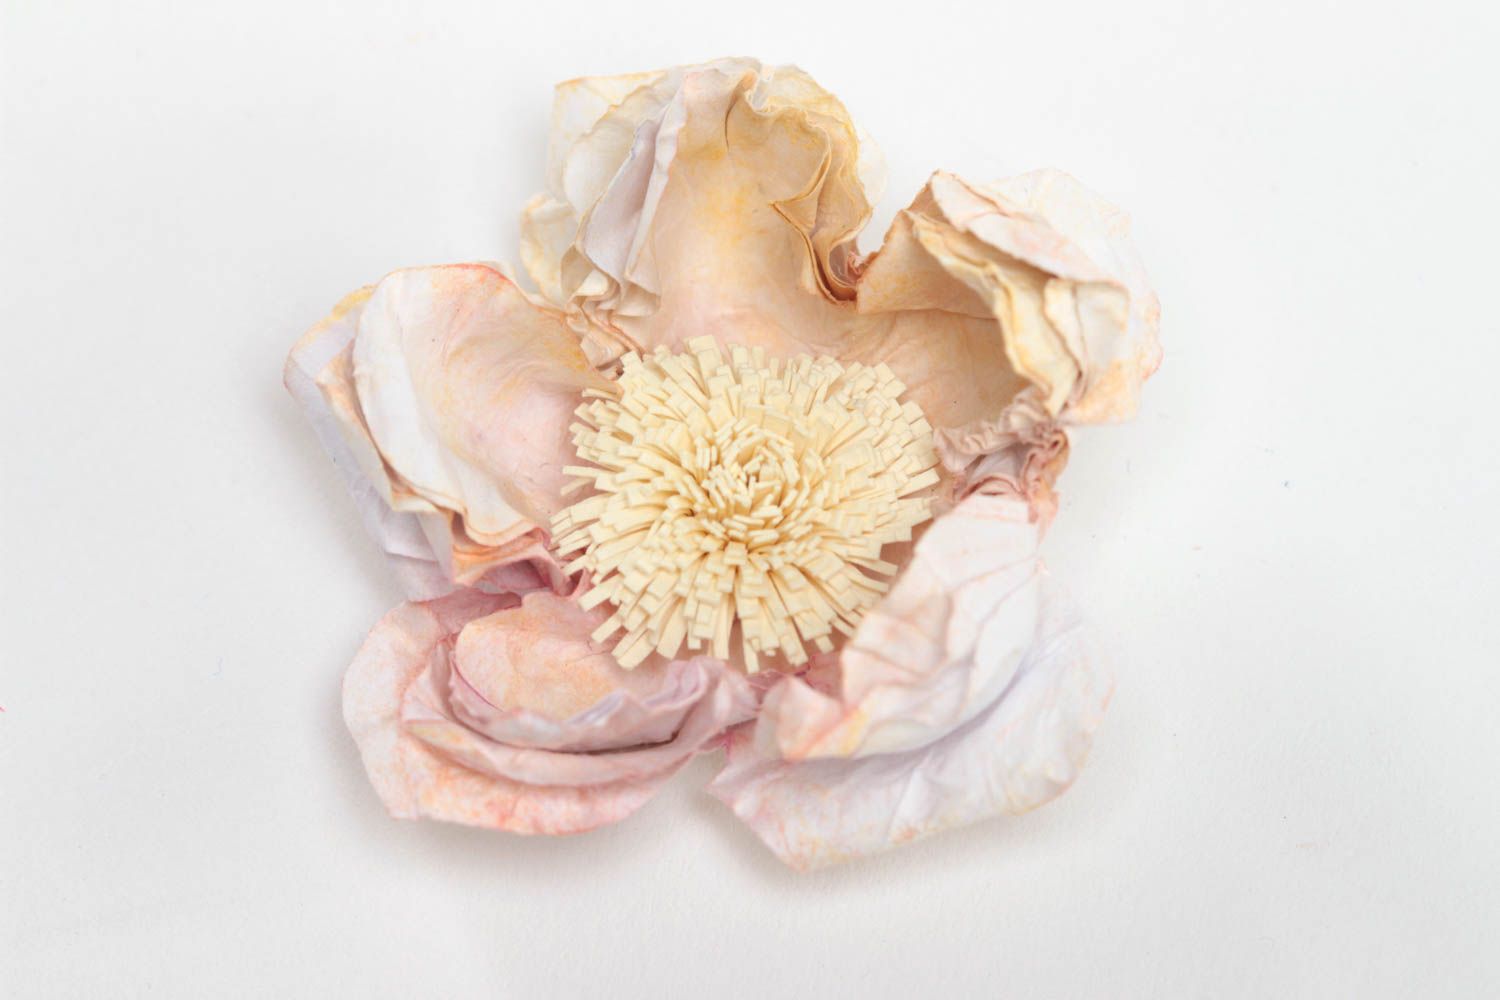 Красивый объемный бумажный цветок для декора открыток и блокнотов скрапбугинг фото 2